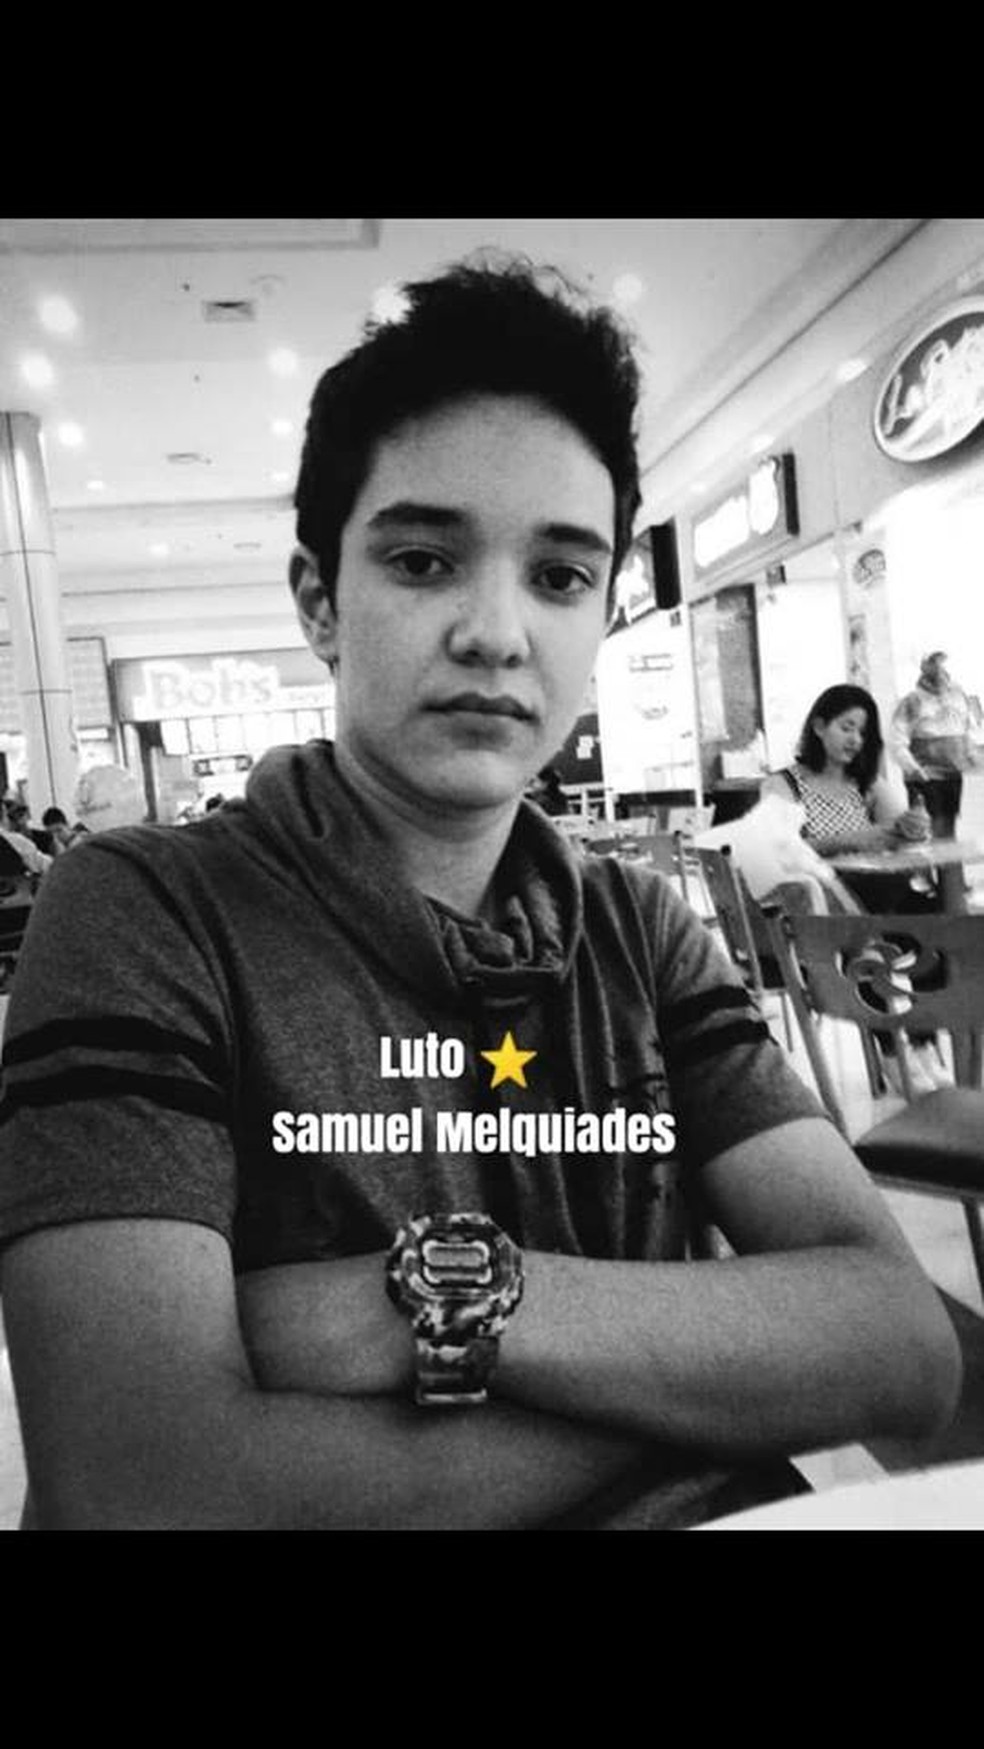 Samuel MelquÃ­ades Ã© uma das vÃ­timas do massacre em Escola Estadual de Suzano. â€” Foto: ReproduÃ§Ã£o Facebook.